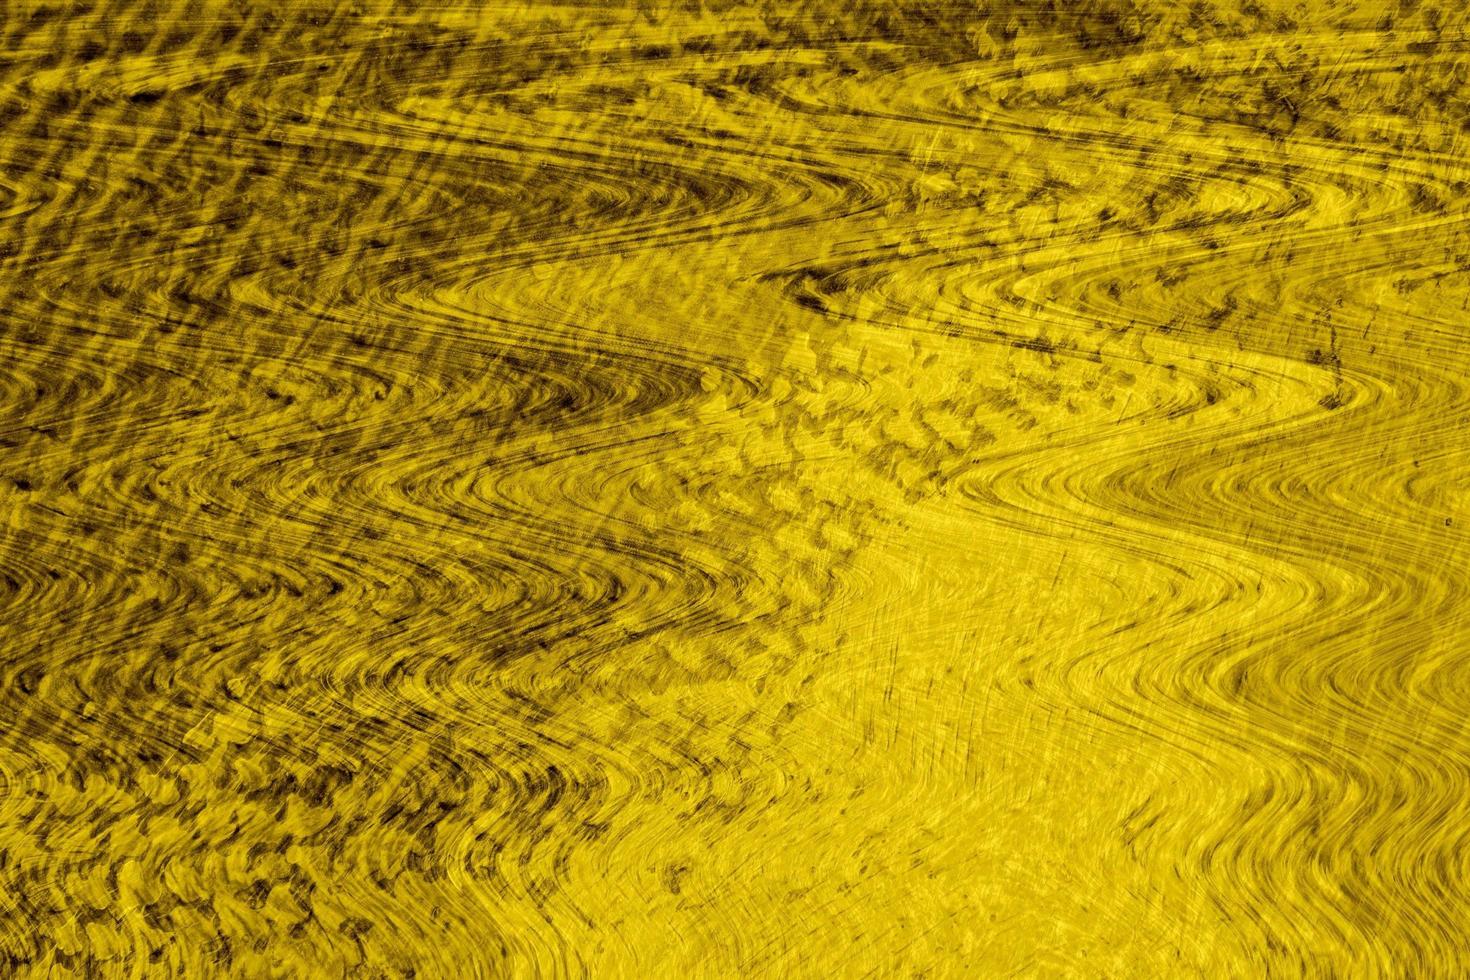 gelbe wand- oder papierstruktur, abstrakter zementoberflächenhintergrund, betonmuster, bemalter zement, ideengrafikdesign für webdesign oder banner foto